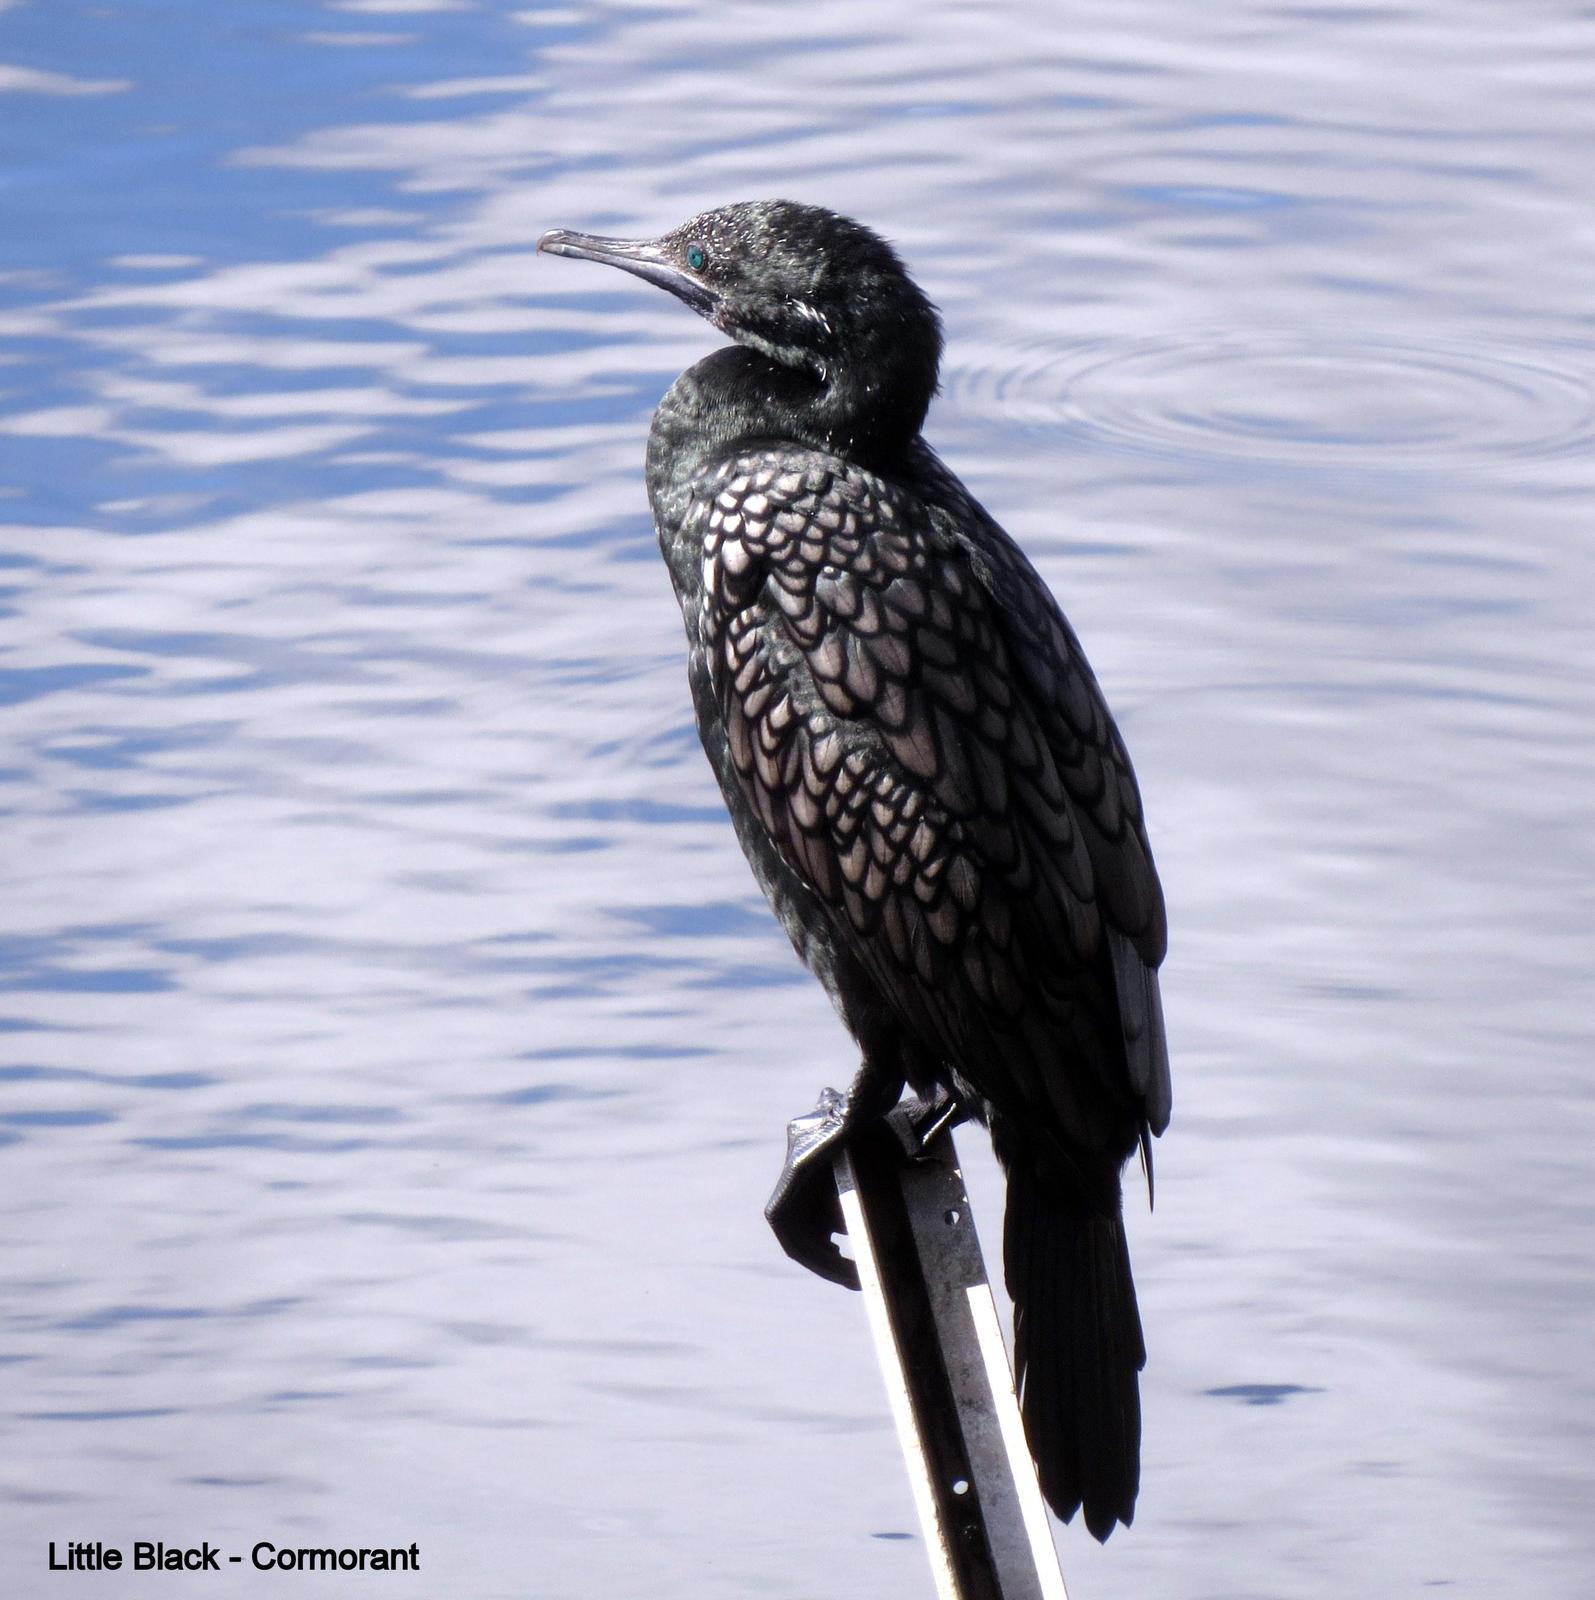 Little Black Cormorant Photo by Richard  Lowe